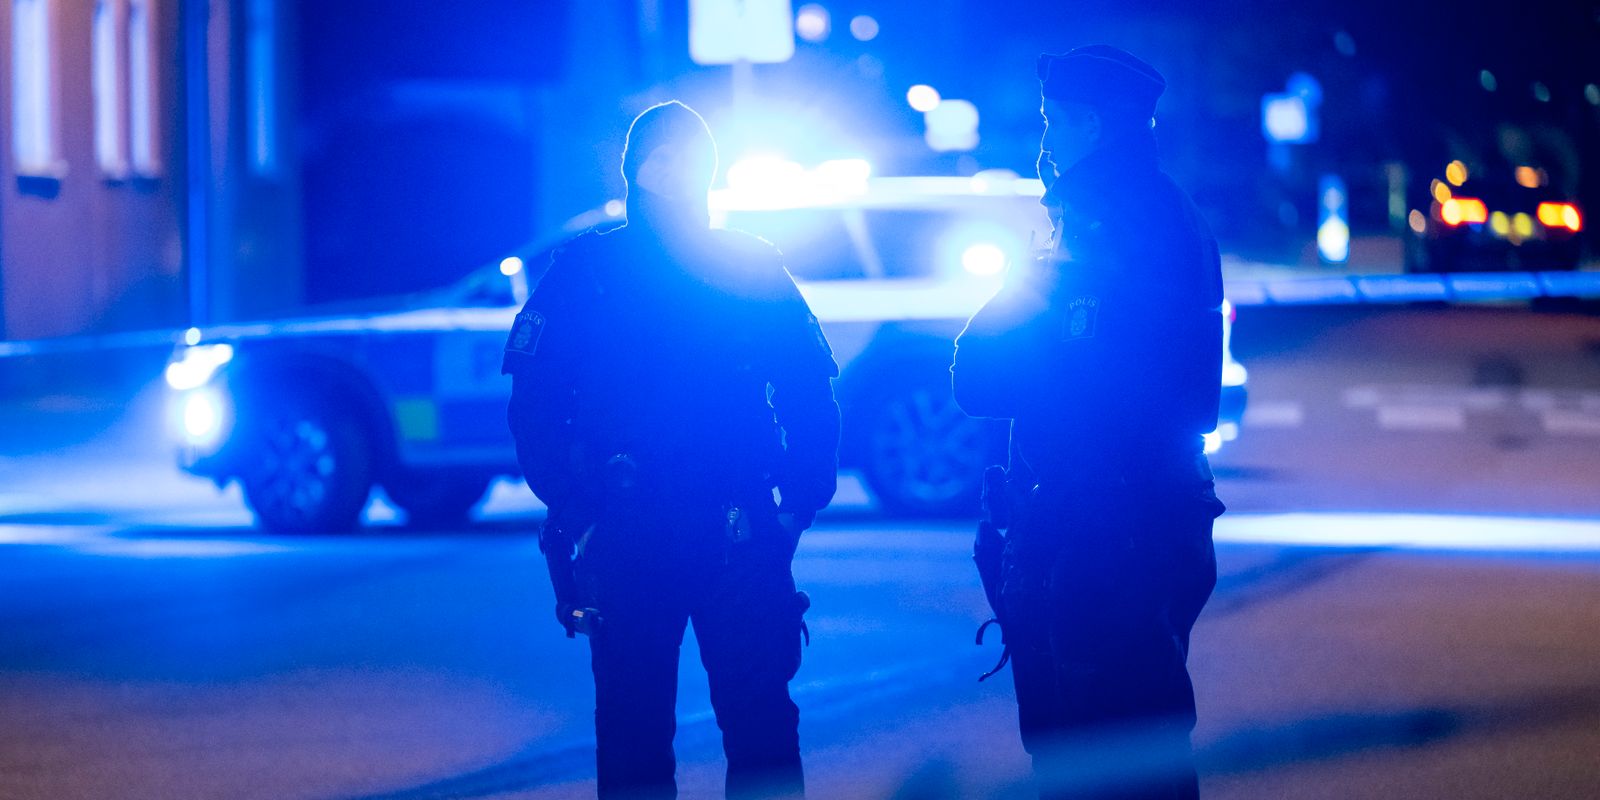 polisen tipsades om dåd dagar innan mordet: ”räckte inte för att förhindra”